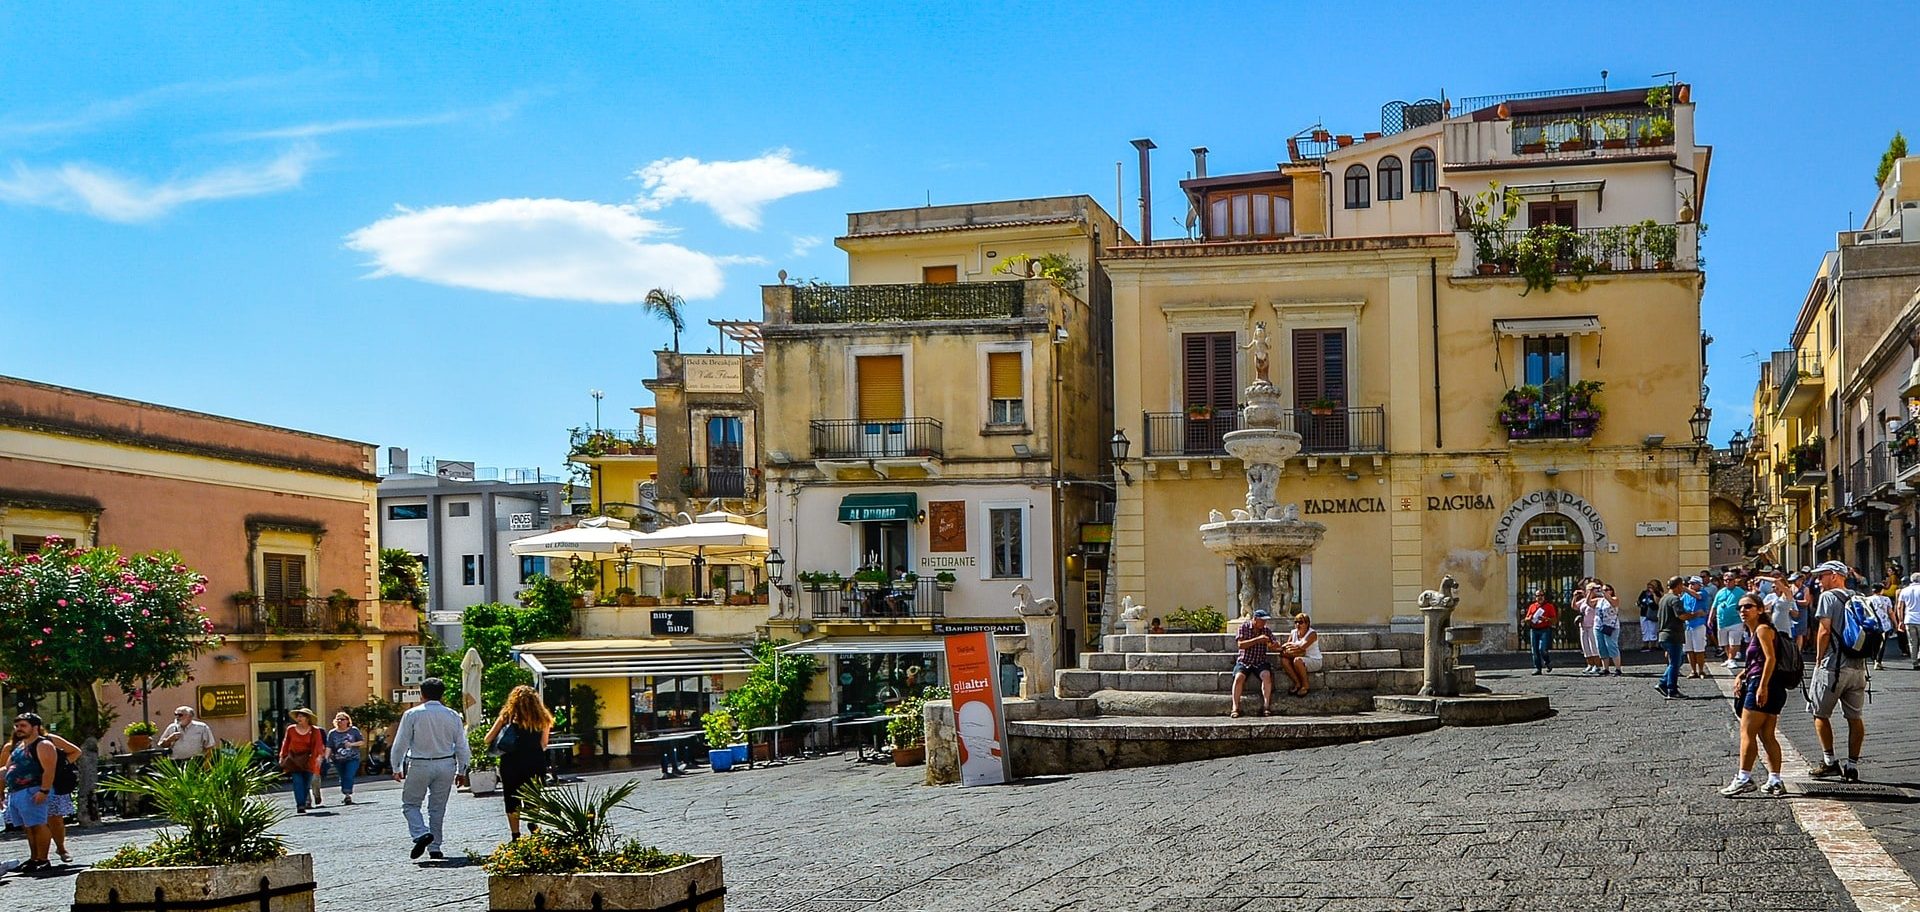 Consigli su dove dormire a Taormina? Ecco le migliori case vacanze.